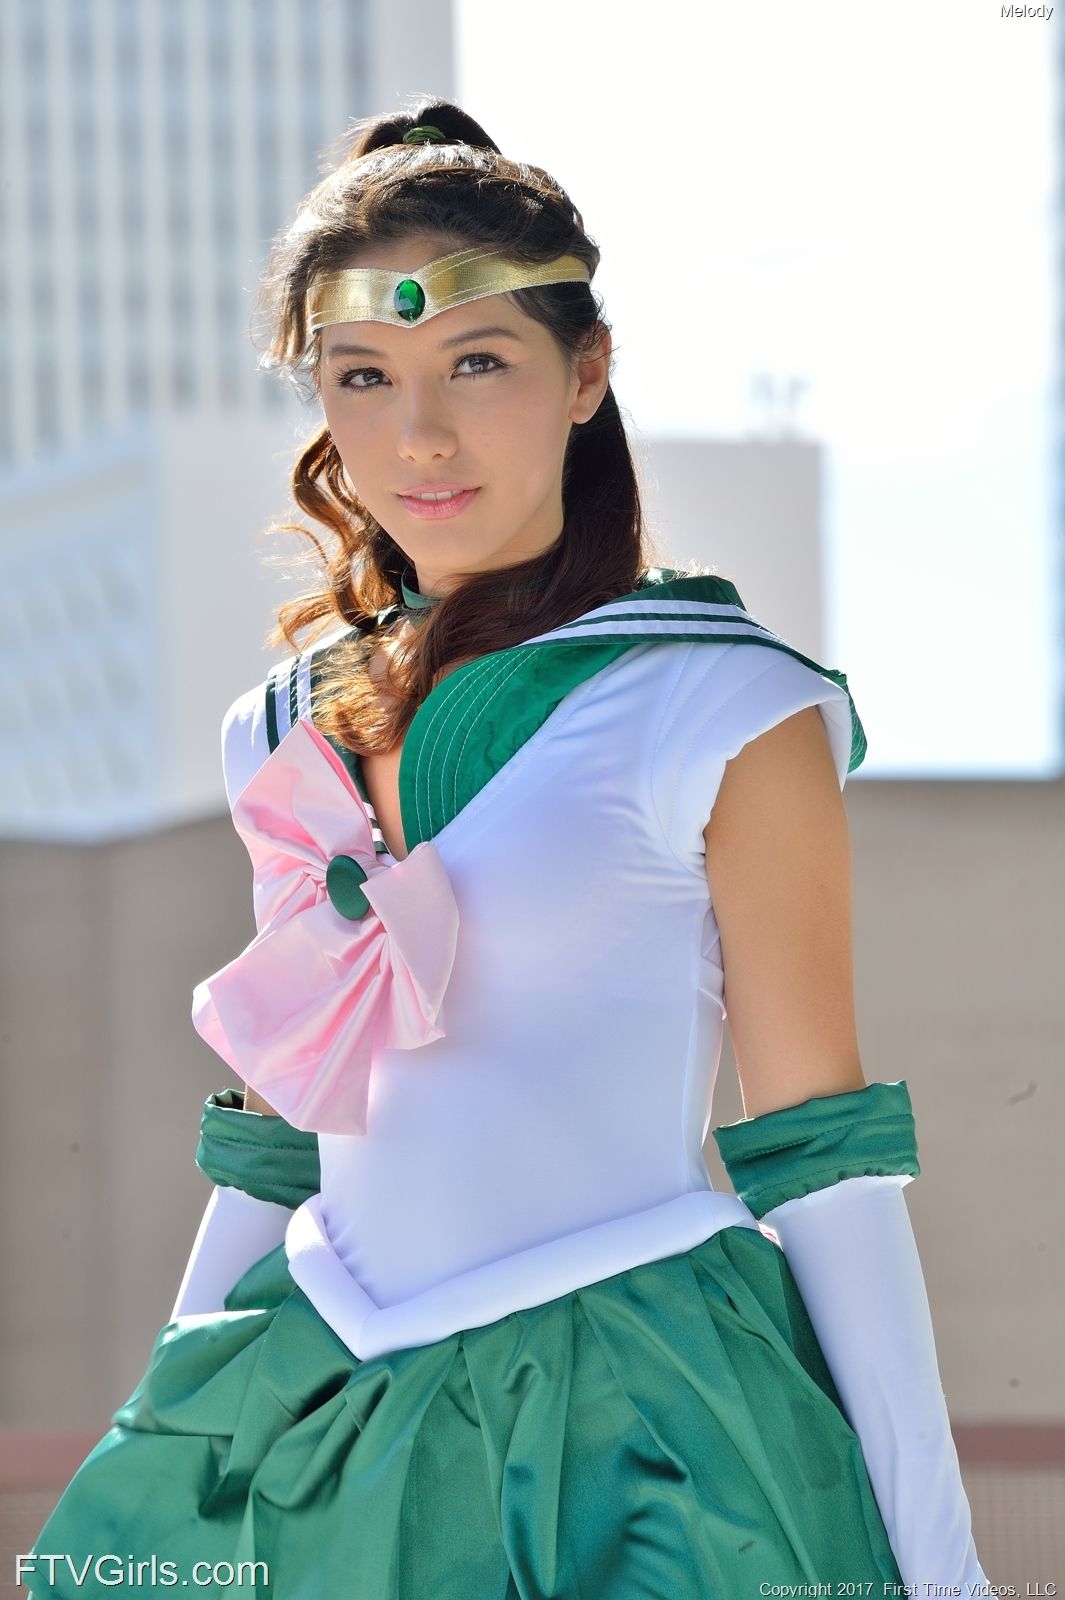 Melody Wylde as Sailor Jupiter 2